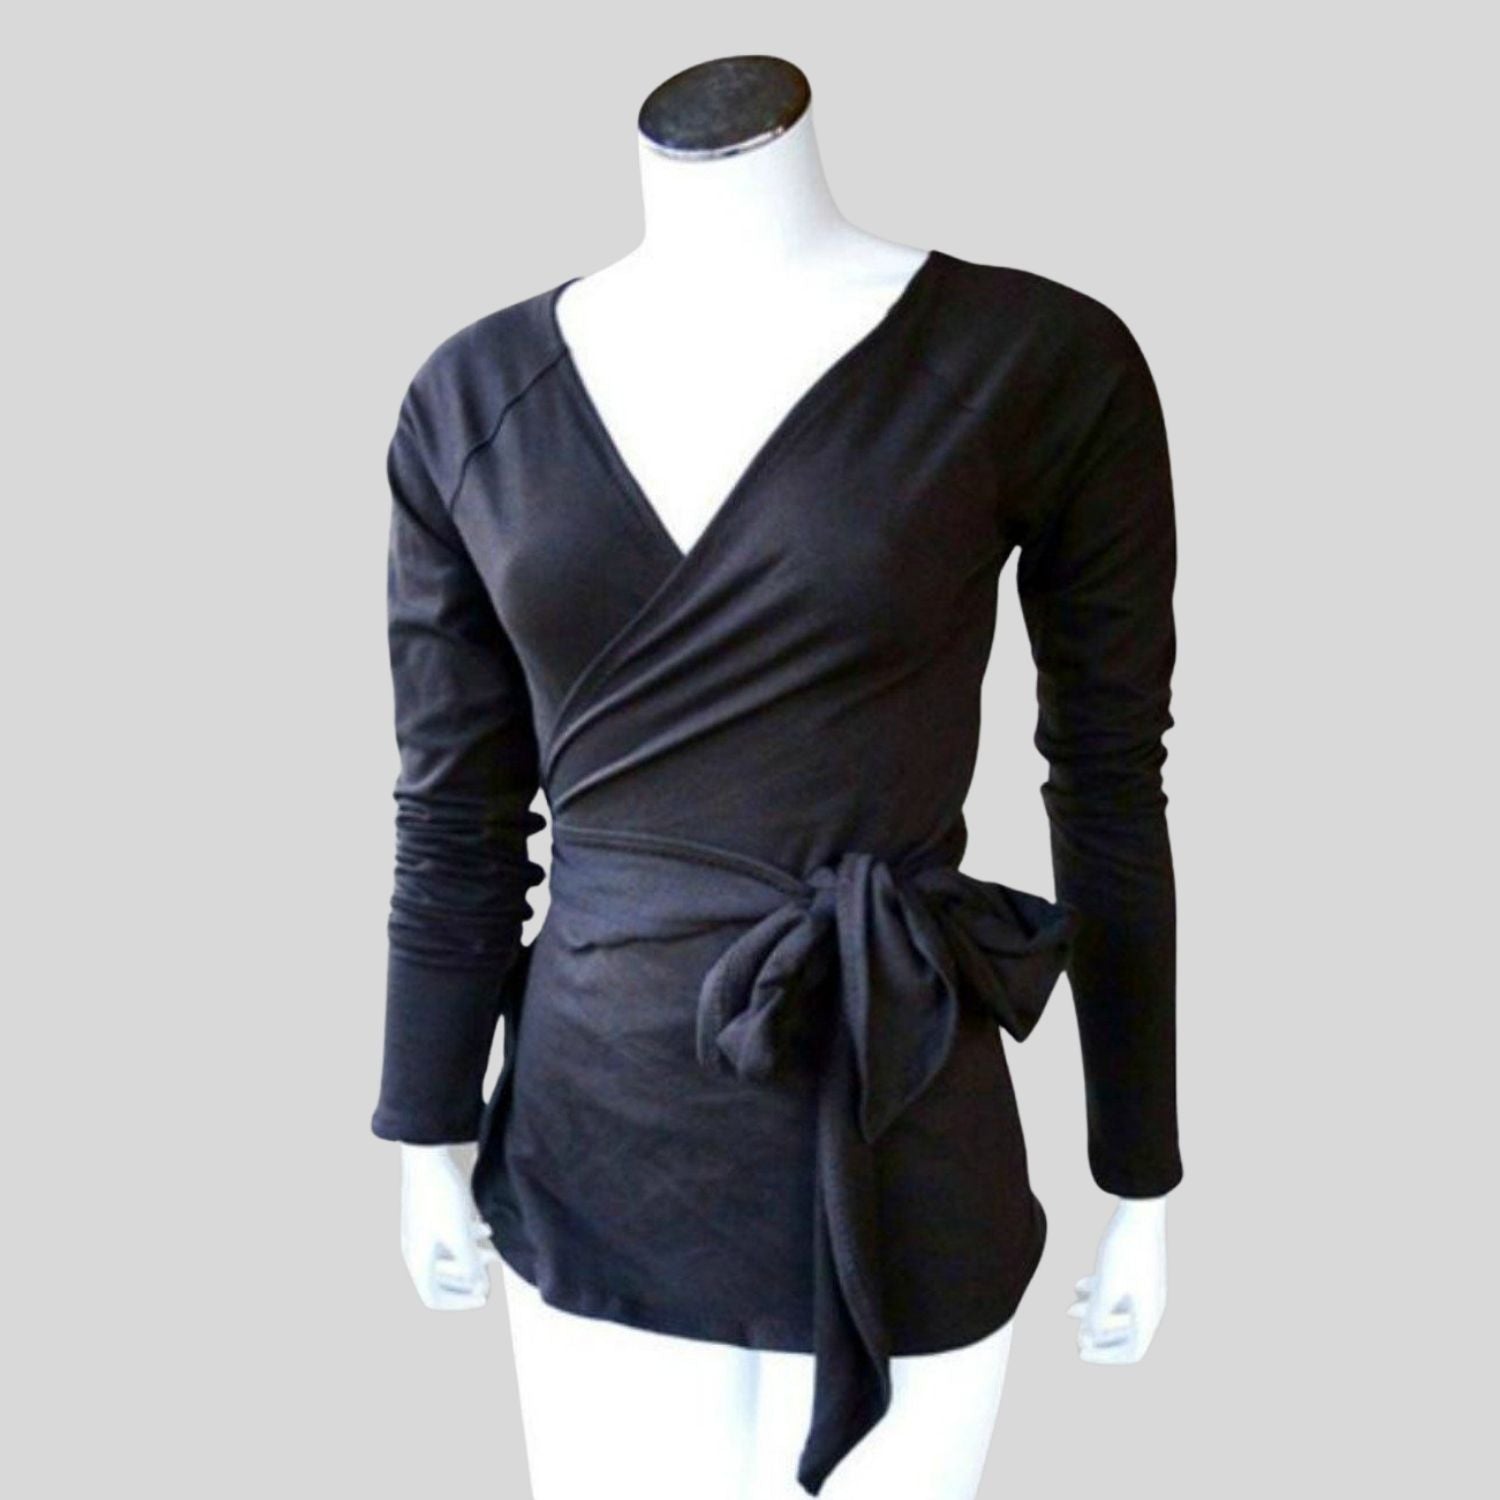 Women's black wrap top | Shop made in Canada wrap shirts for women | Econica - organic women's clothing store